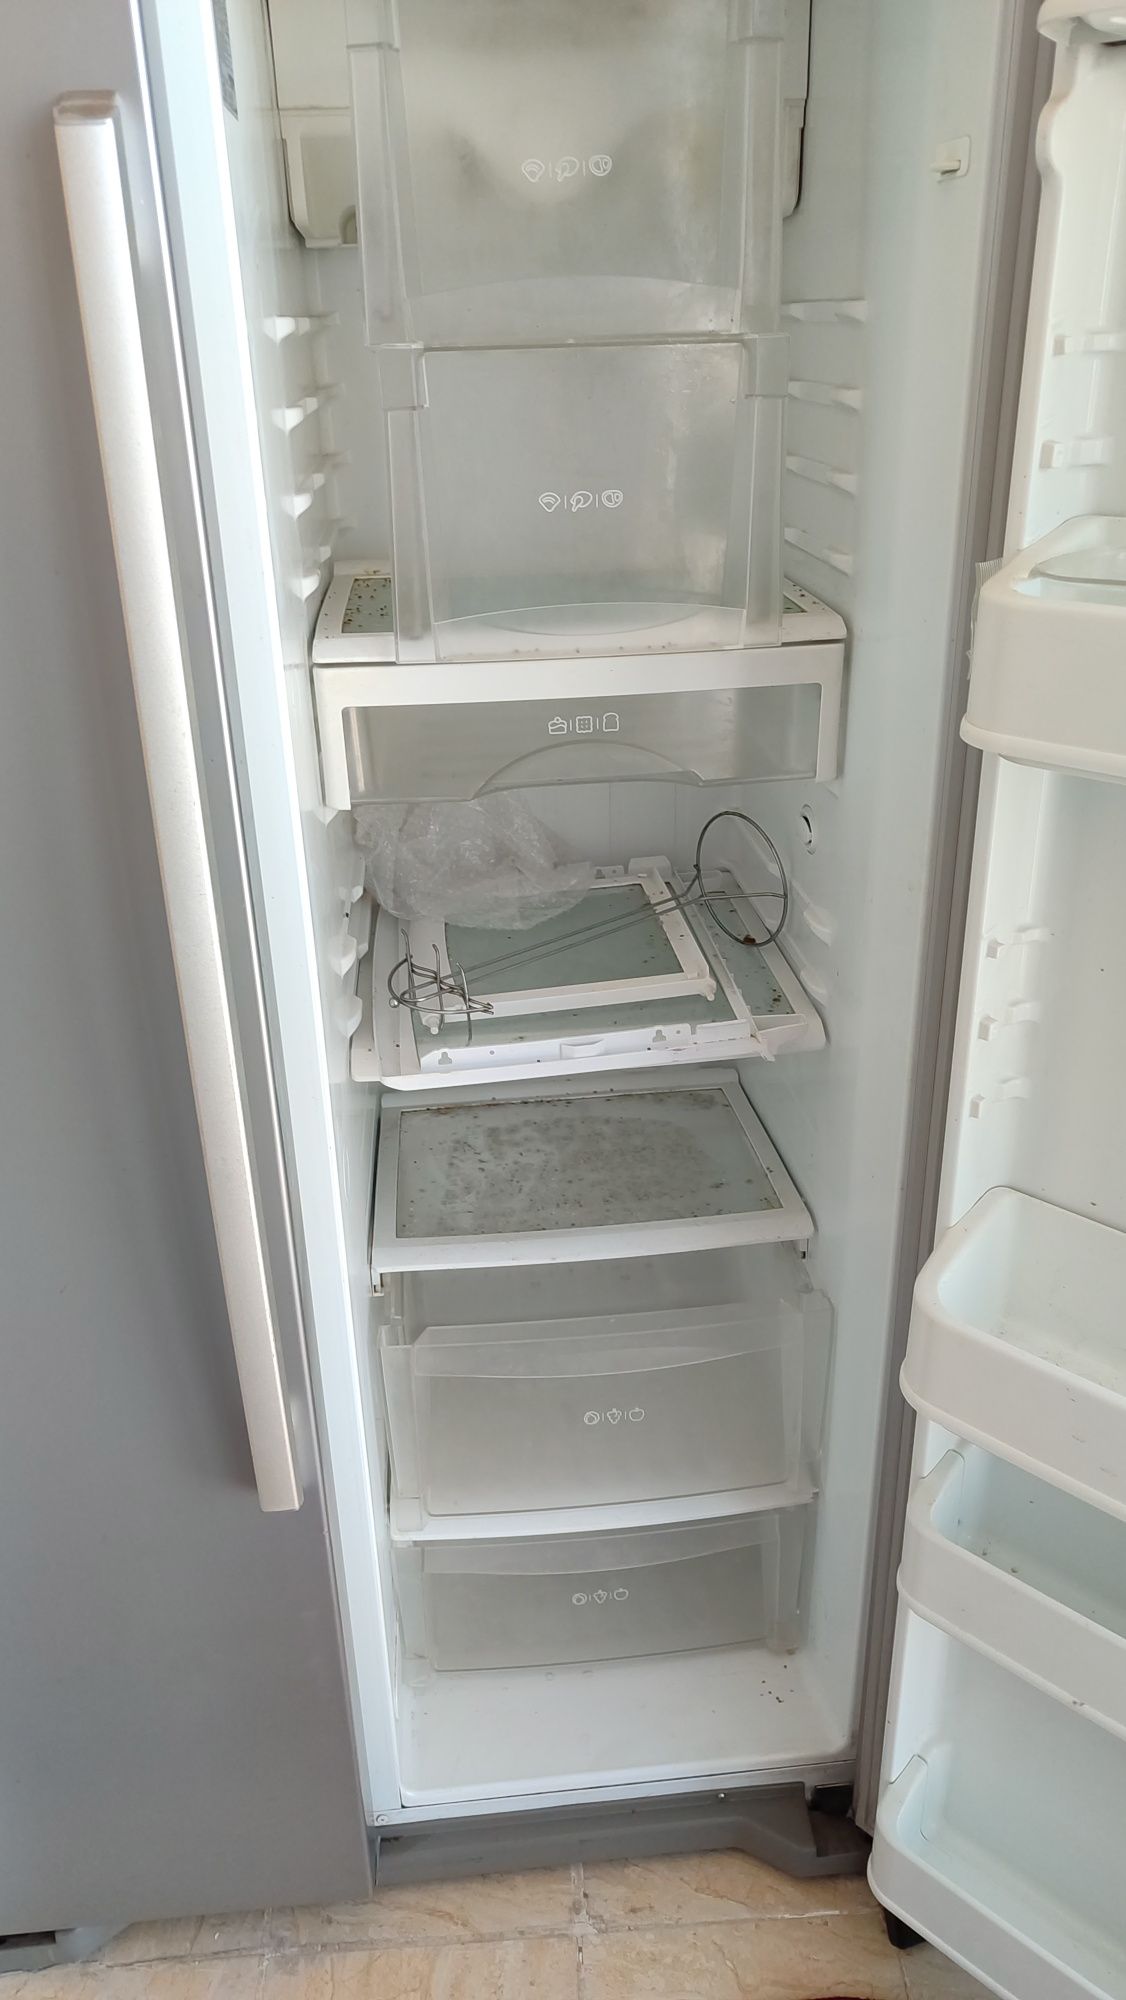 Холодильник LG серого цвета